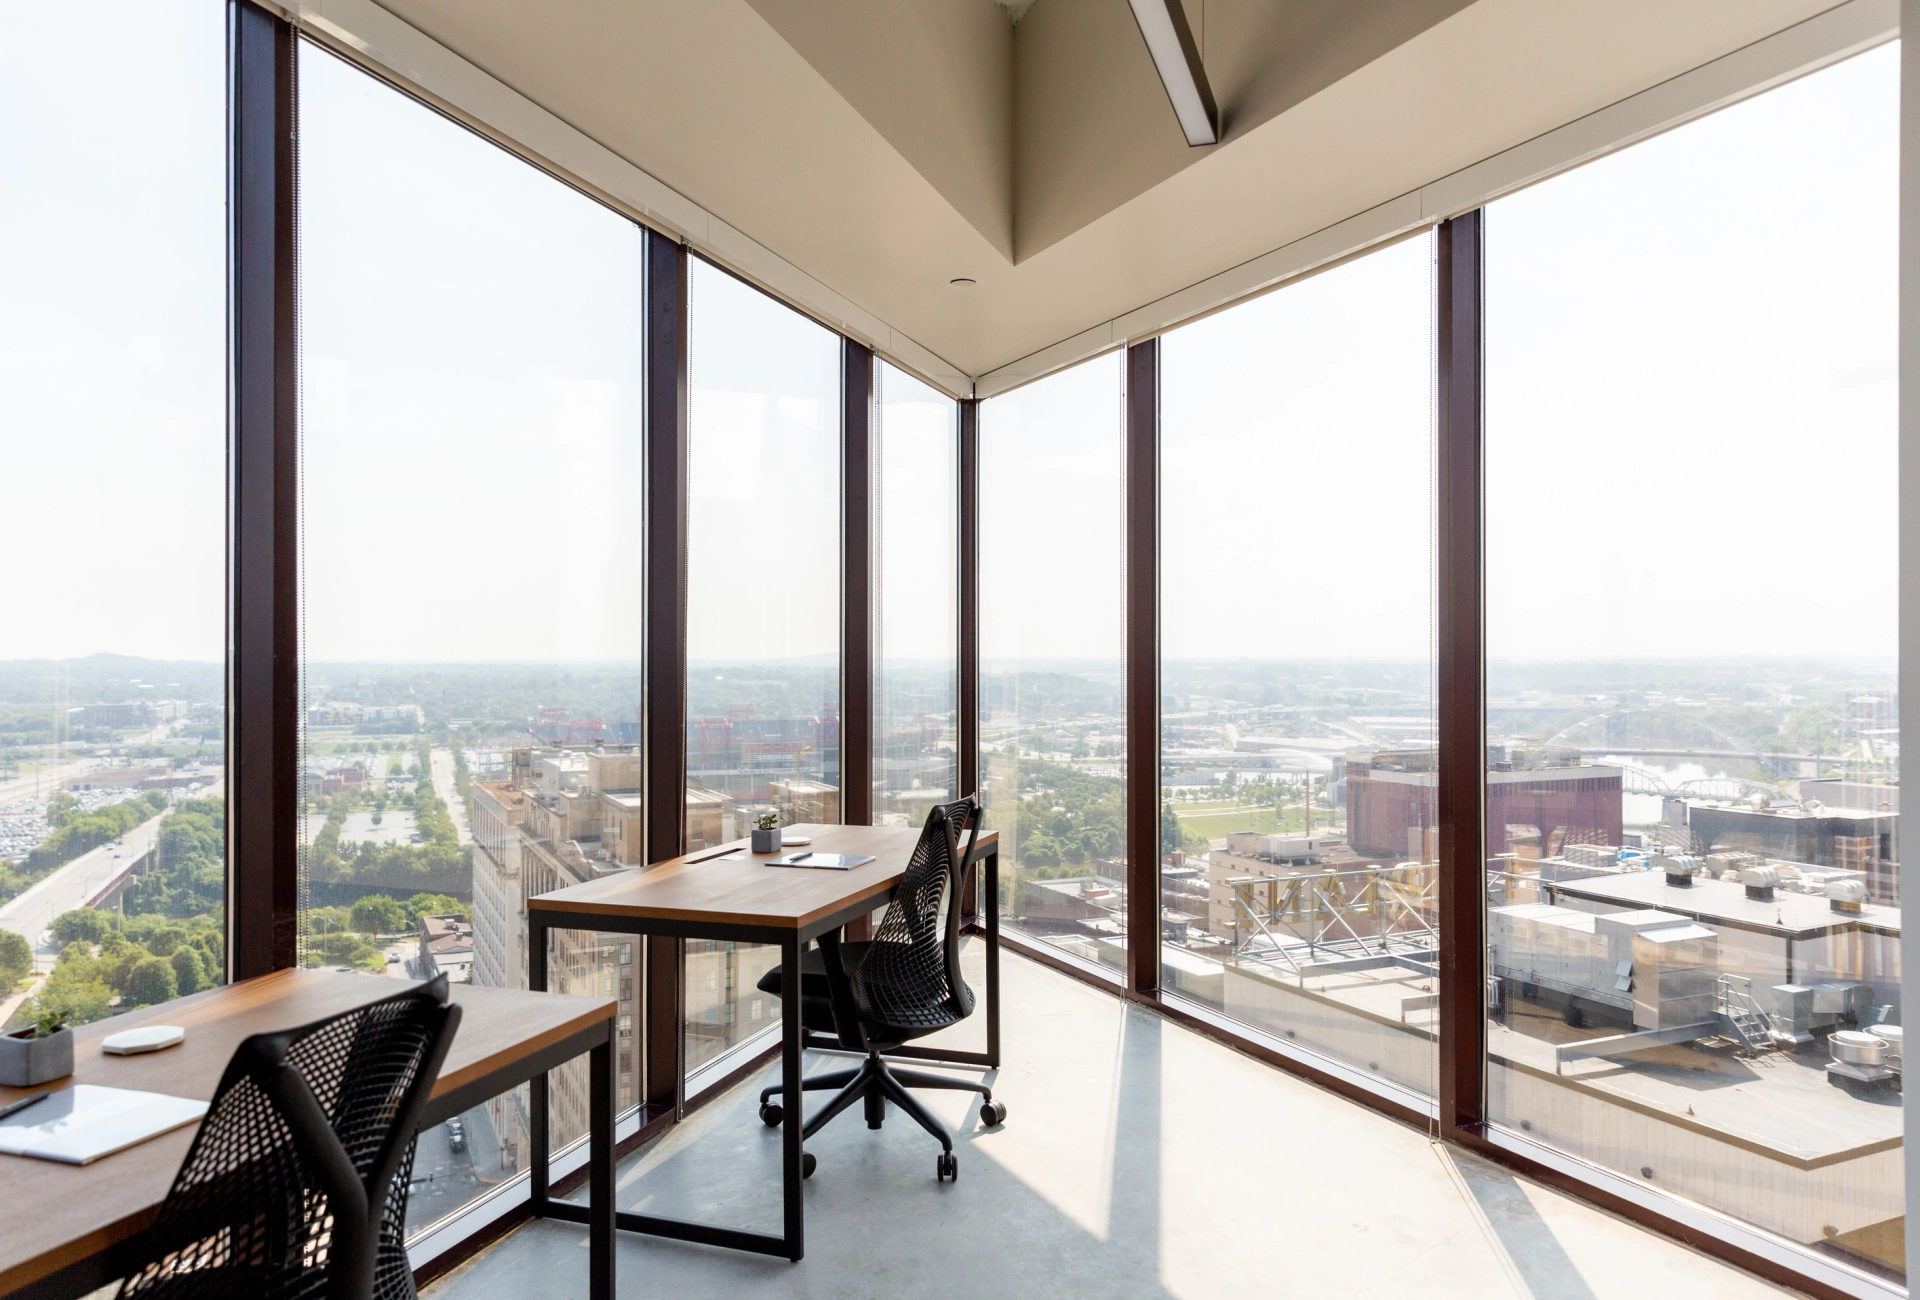 Un espace de coworking basé à Nashville avec des salles de réunion dotées de grandes fenêtres donnant sur la ville.